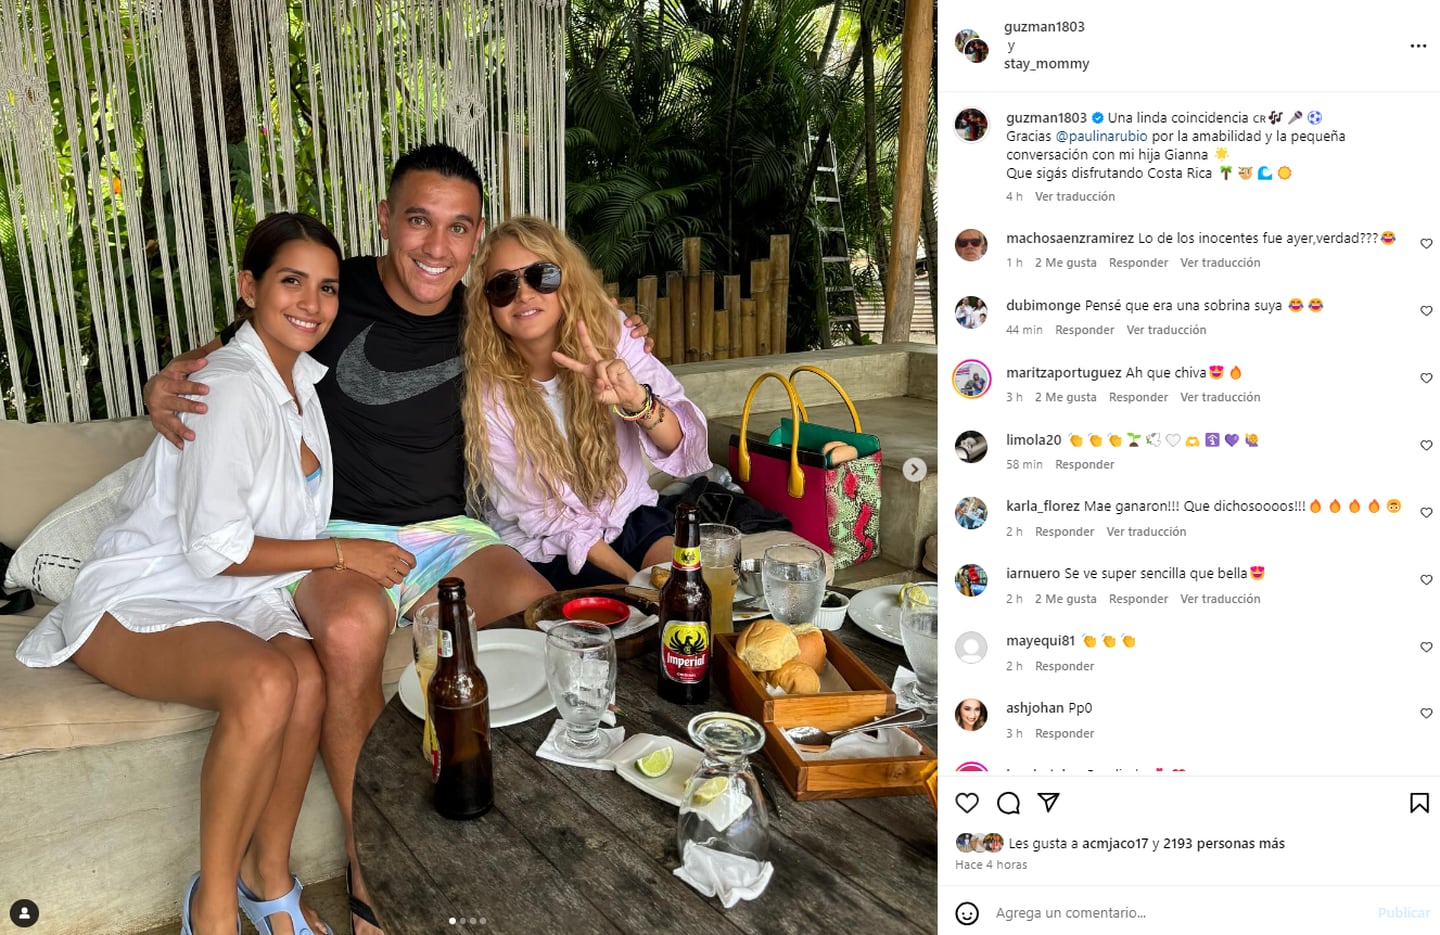 David Guzmán lo expresó en su cuenta de Instagram, que encontrarse con Paulina Rubio fue una "linda coincidencia". Foto: Instagram.